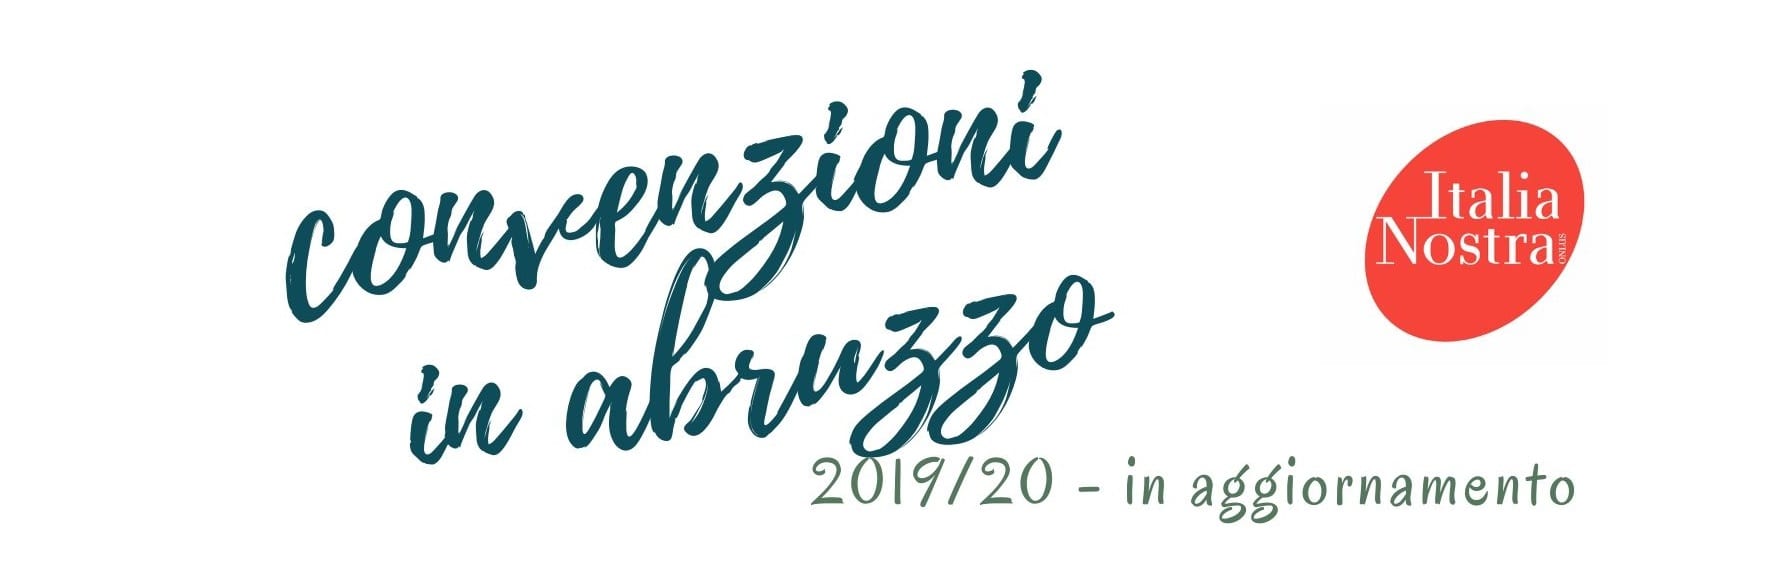 Convenzioni Italia Nostra Abruzzo